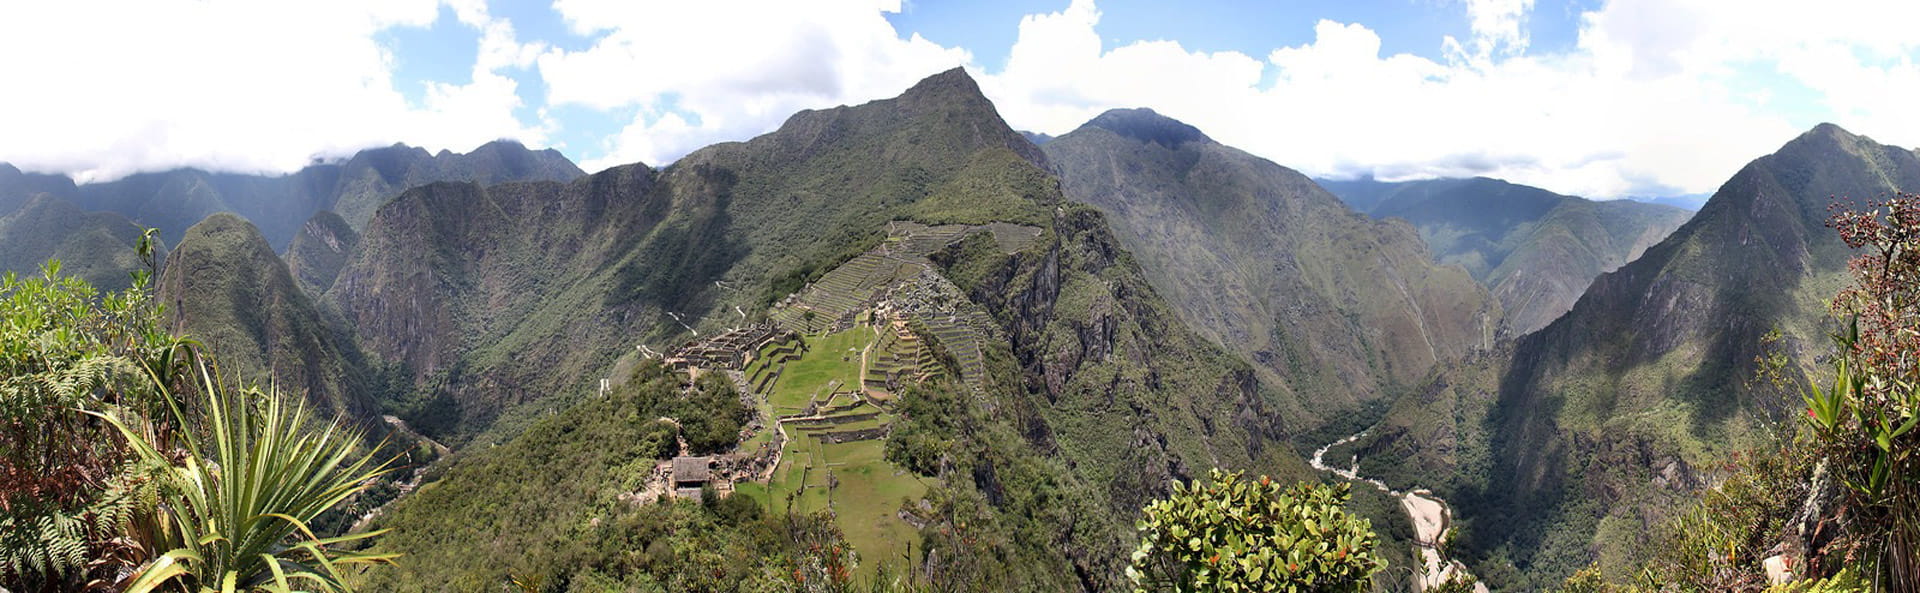 Huchuy Picchu Mountain | Ultimate Trekking